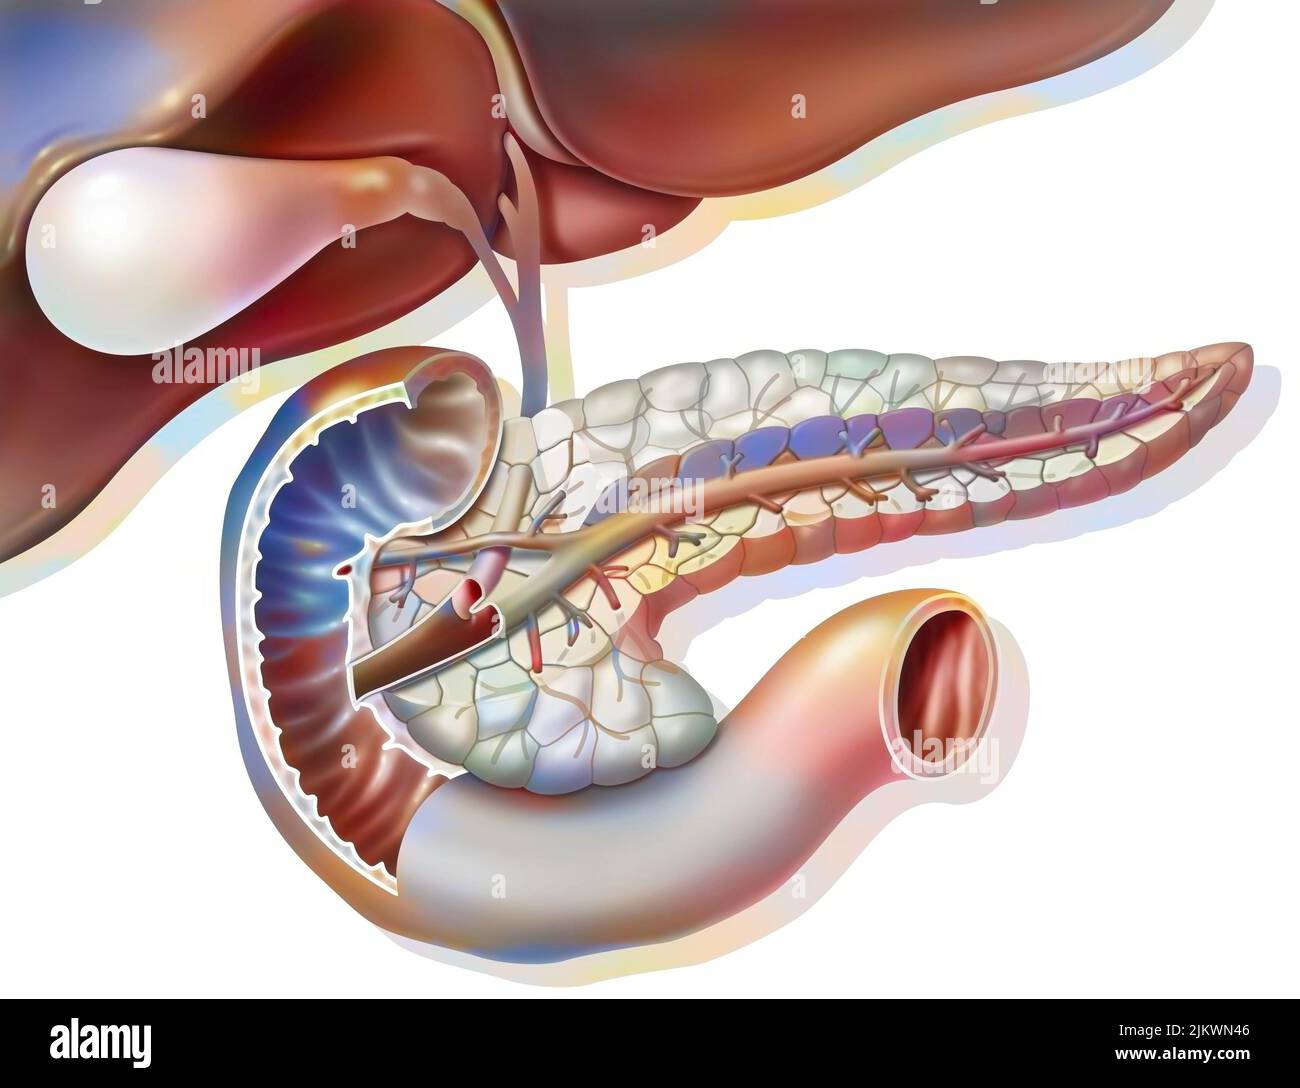 Anatomia sezionale del pancreas con cistifellea e dotto biliare comune. Foto Stock